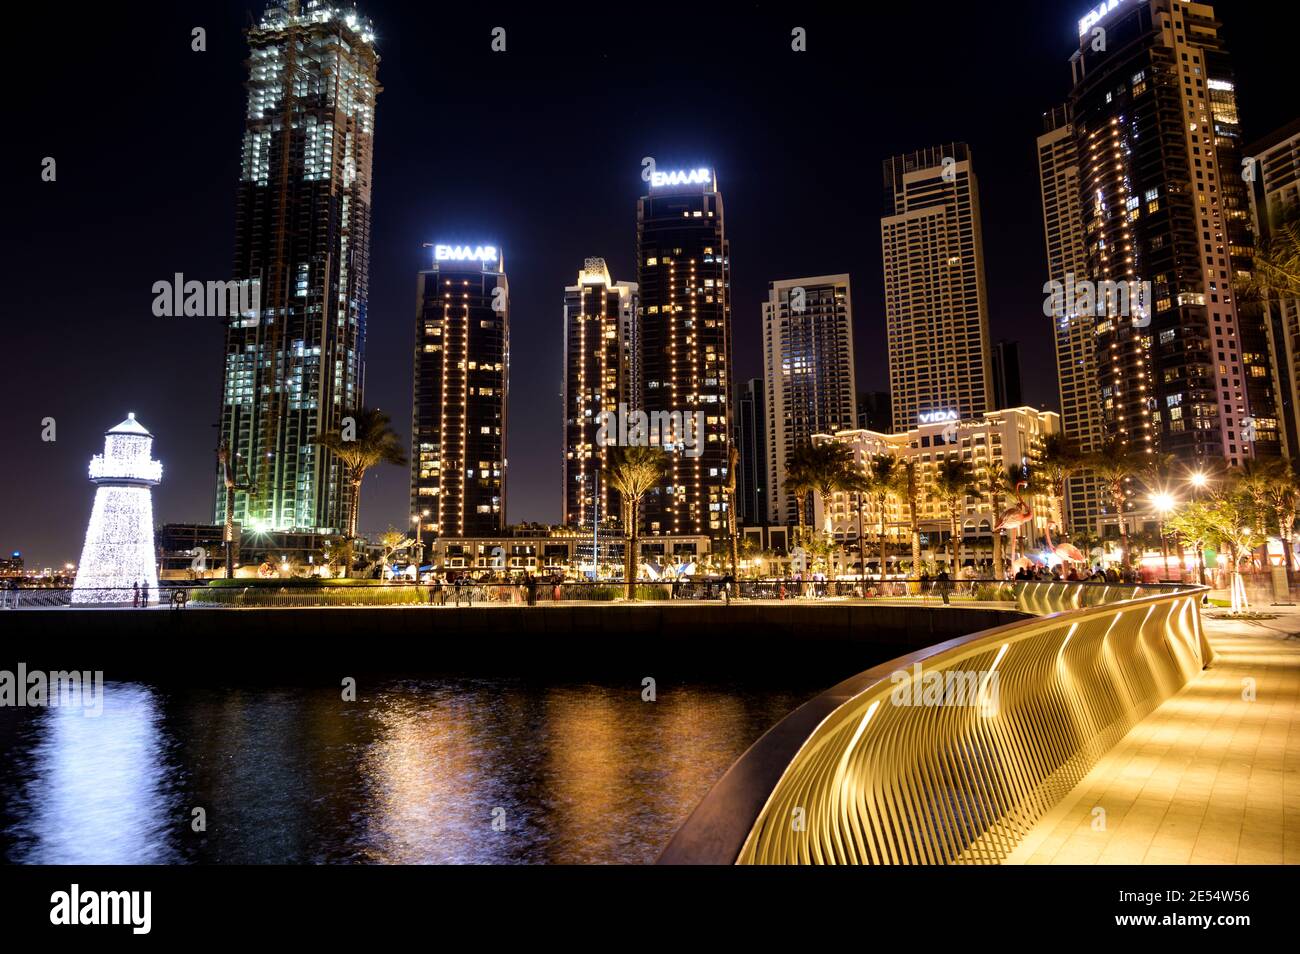 El horizonte del puerto de Dubai creek con el paseo marítimo y los hoteles, tiendas y residencias bellamente iluminados capturados en el puerto de Dubai creek Foto de stock